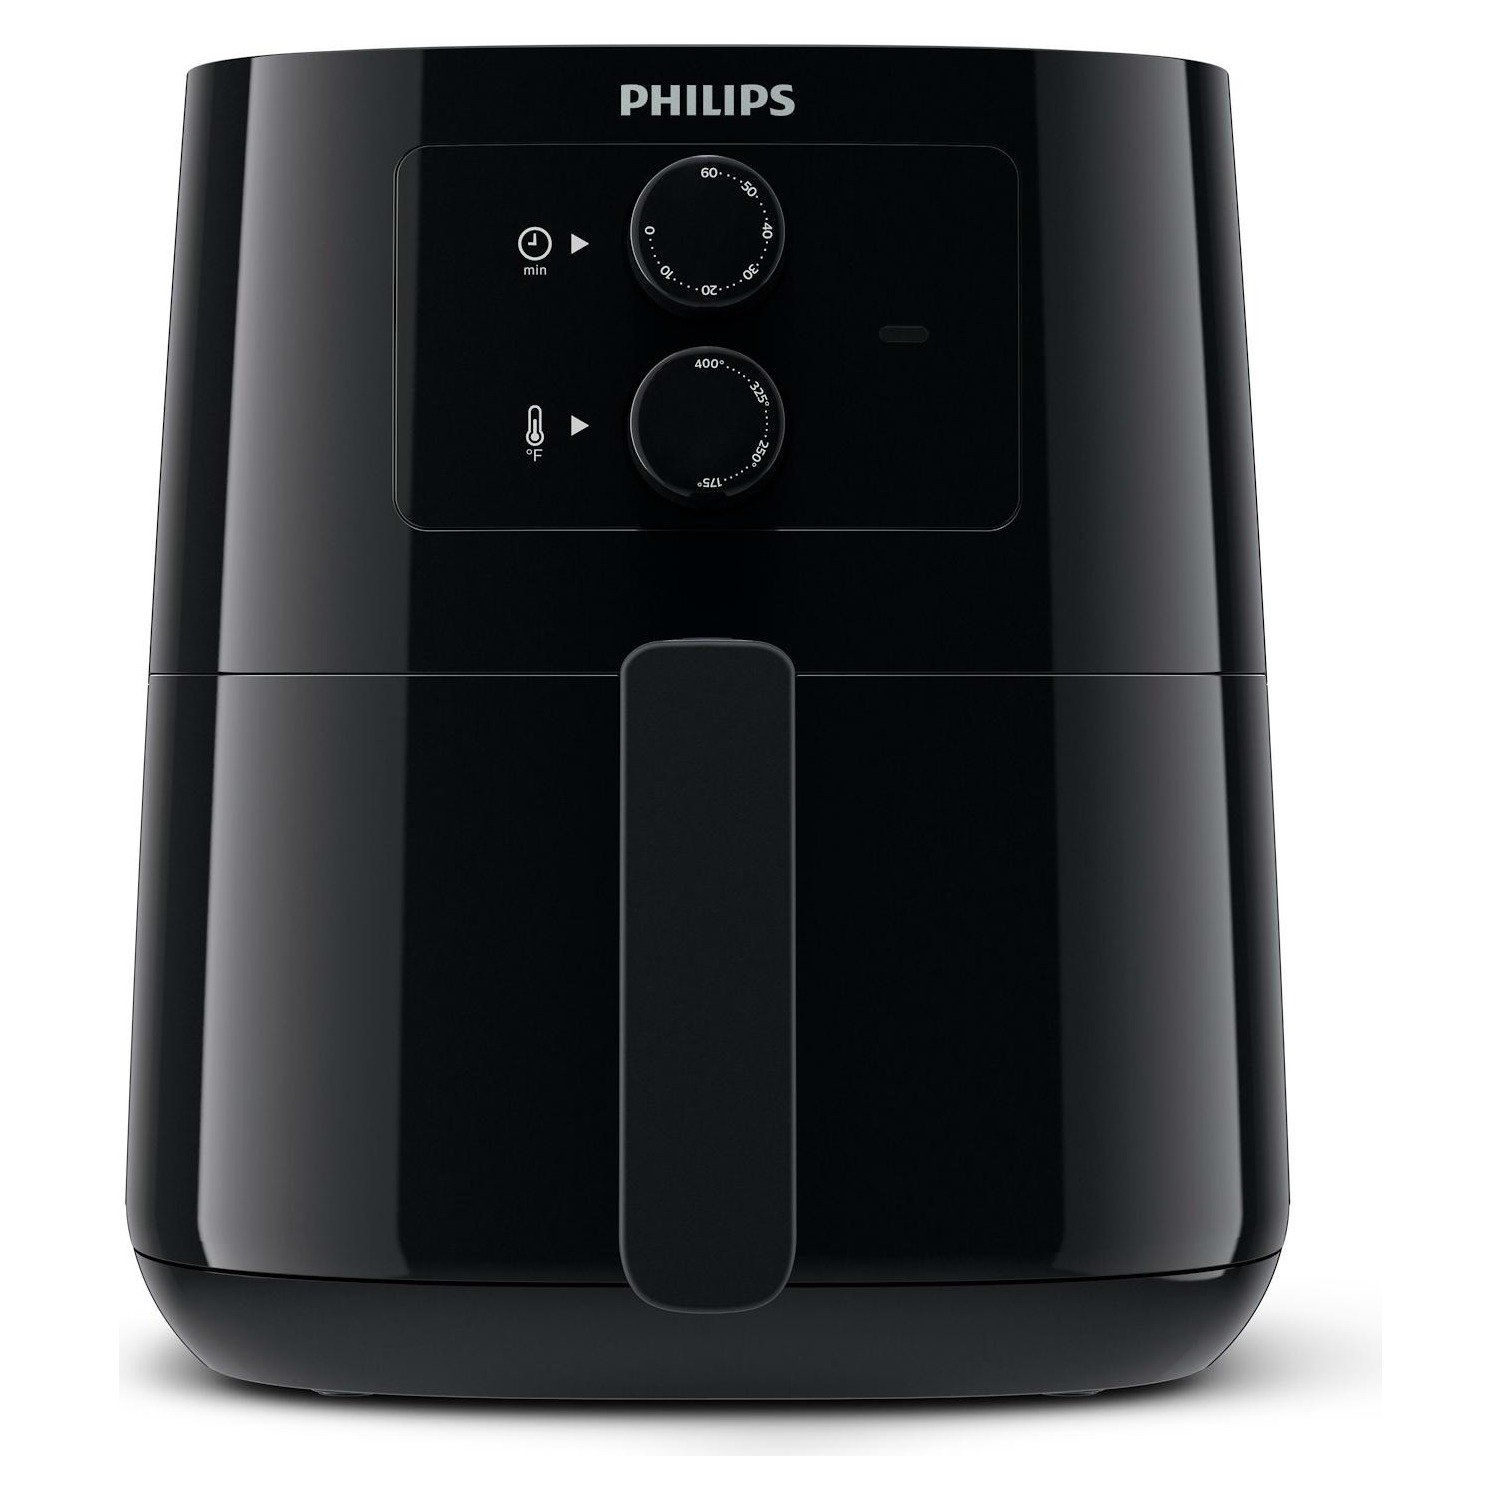 Immagine per Friggitrice ad aria Philips HD9200/90 capacita' 800 grammi da DIMOStore